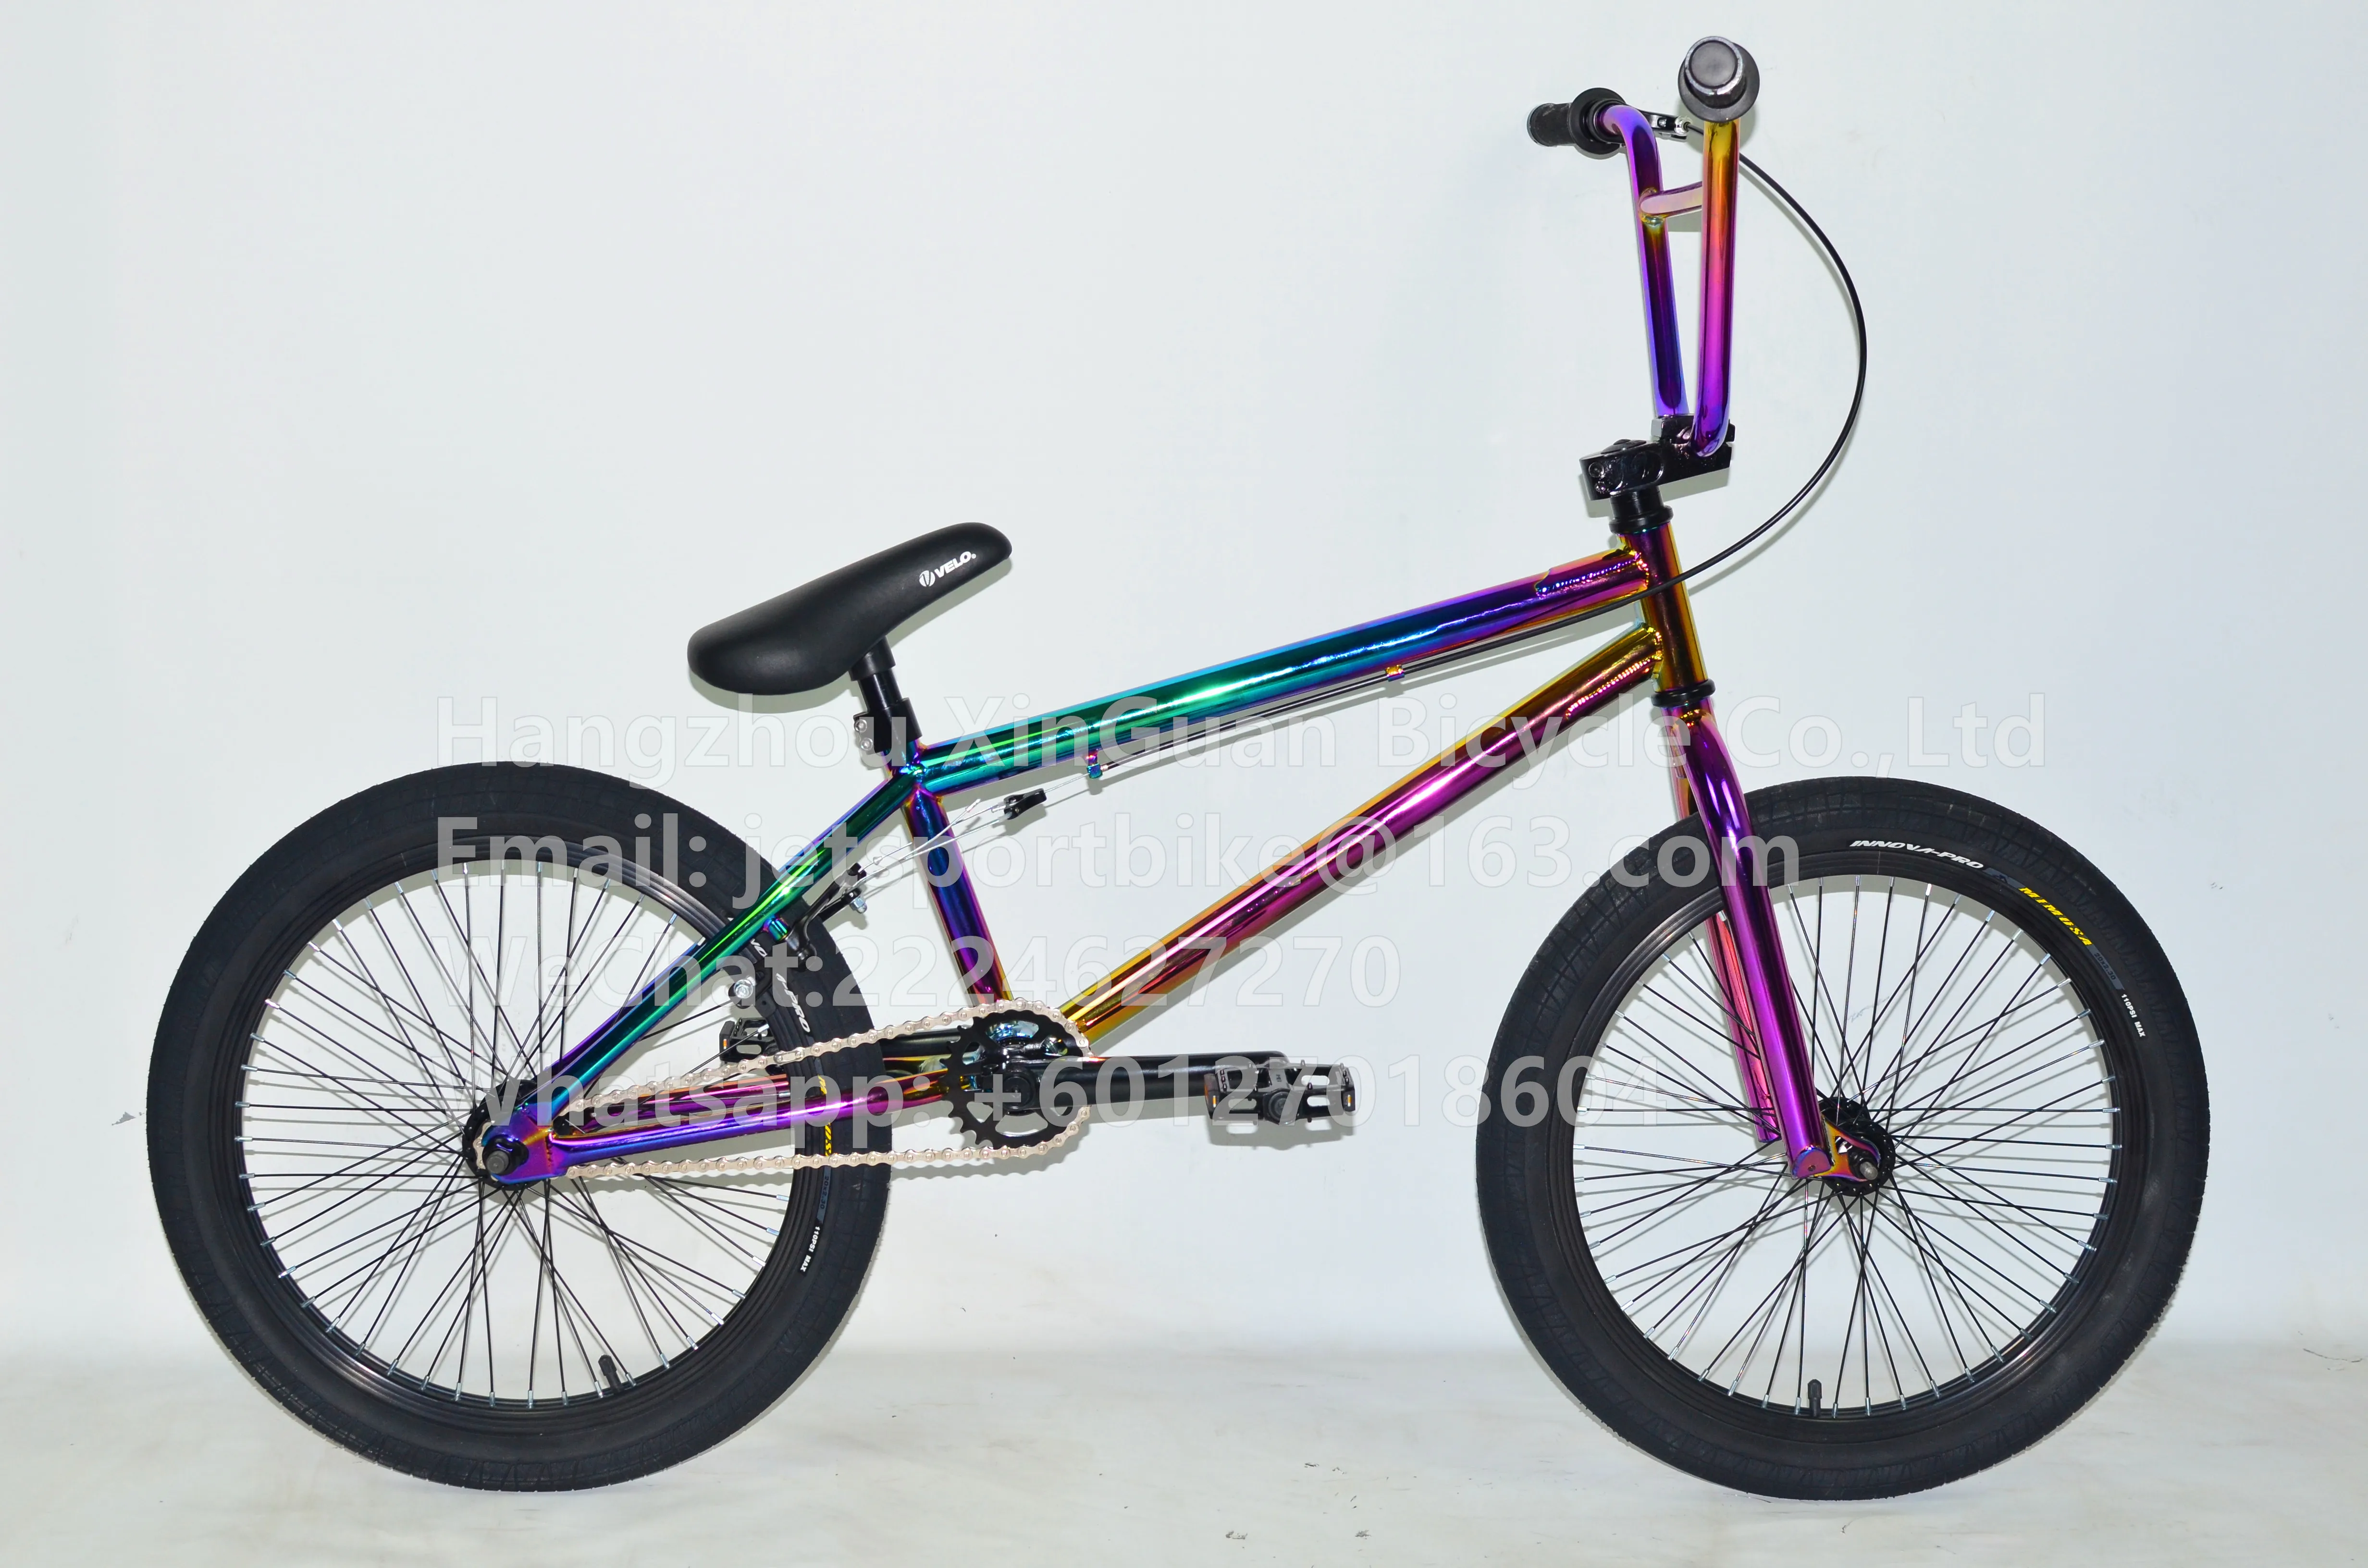 rainbow bmx bike for sale